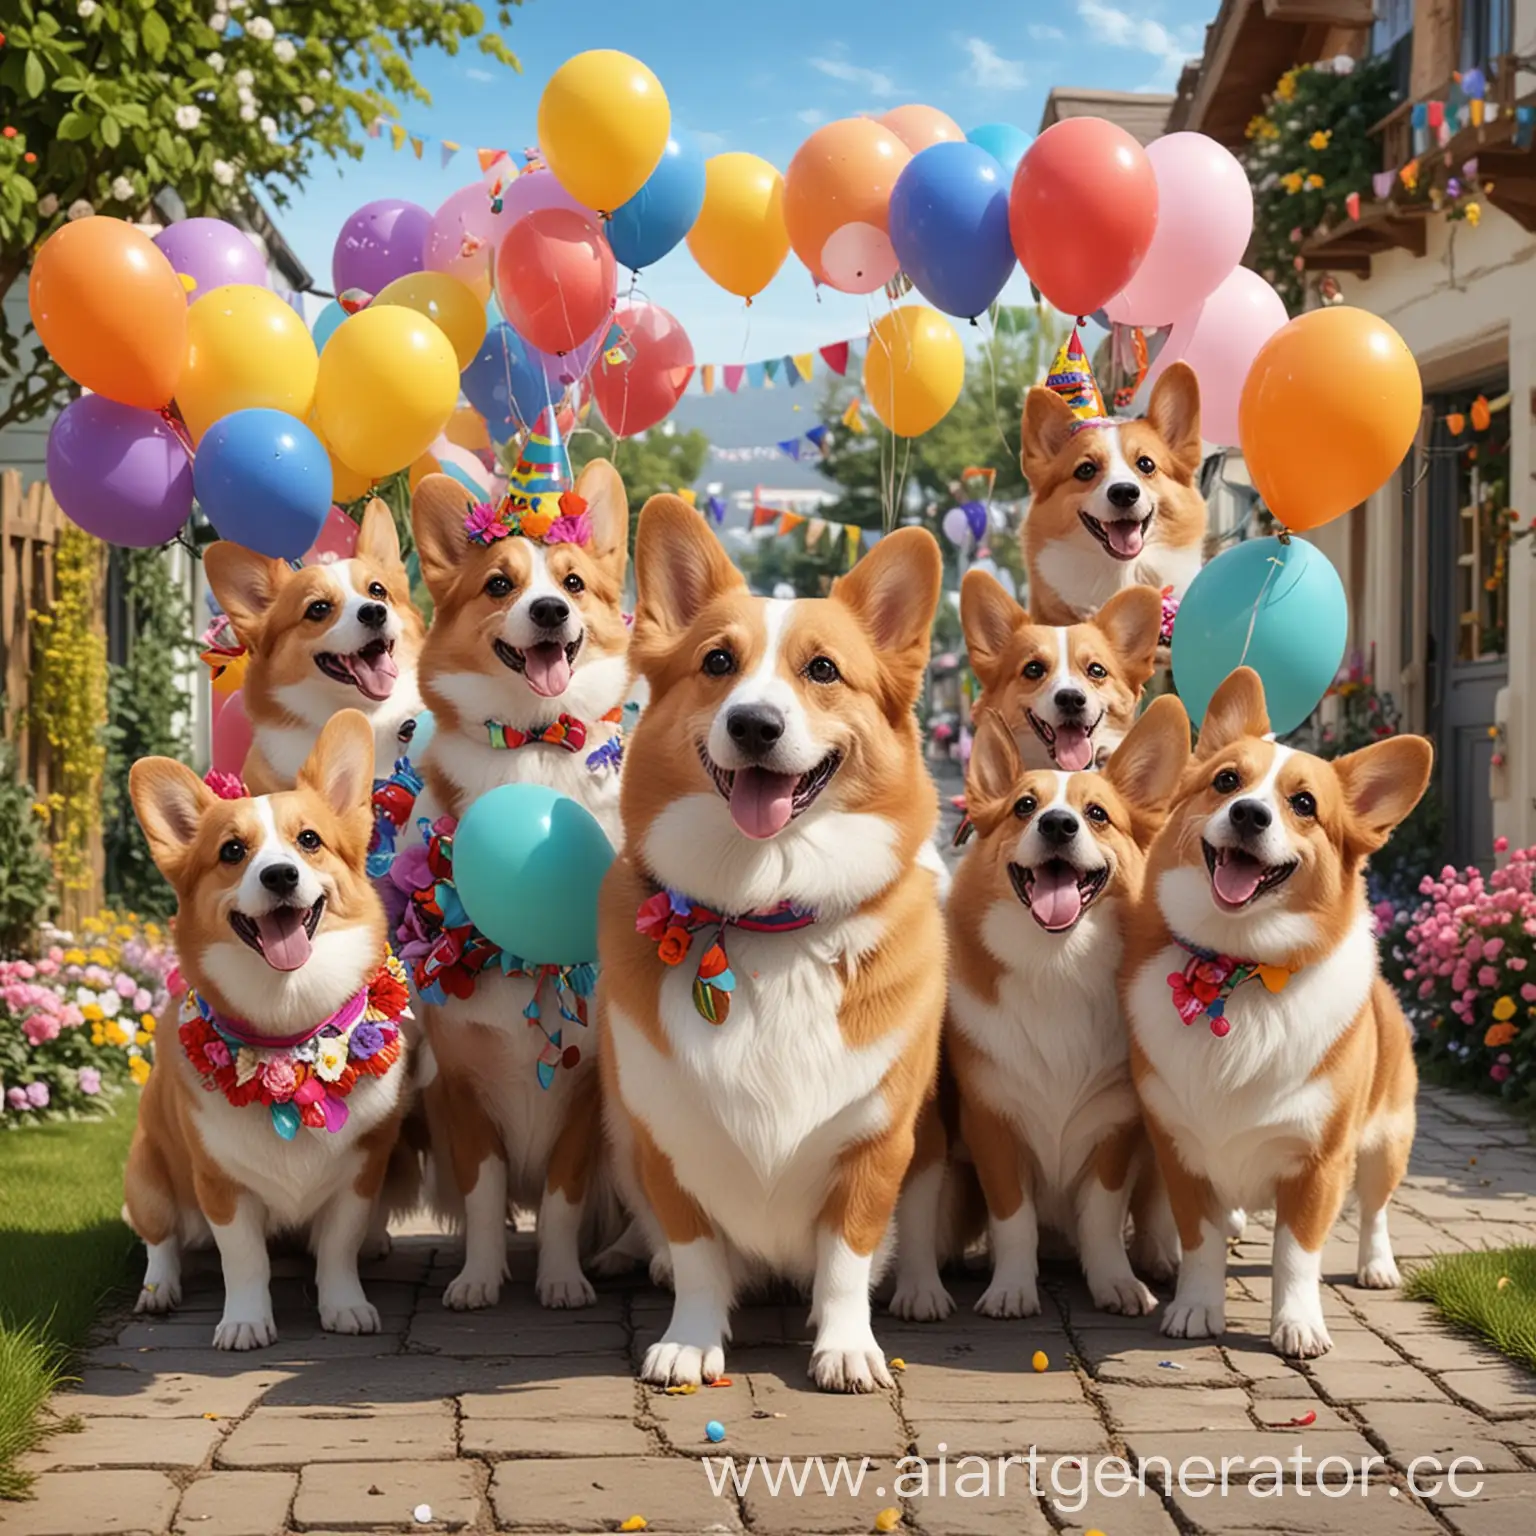 Мультяшная картинка, Друзья поздравляют маму своего друго с днём рождения,
Вокруг цветы, цветные воздушные шарики Все улыбаются, вокруг бегают собаки породы корги в праздничных костюмах